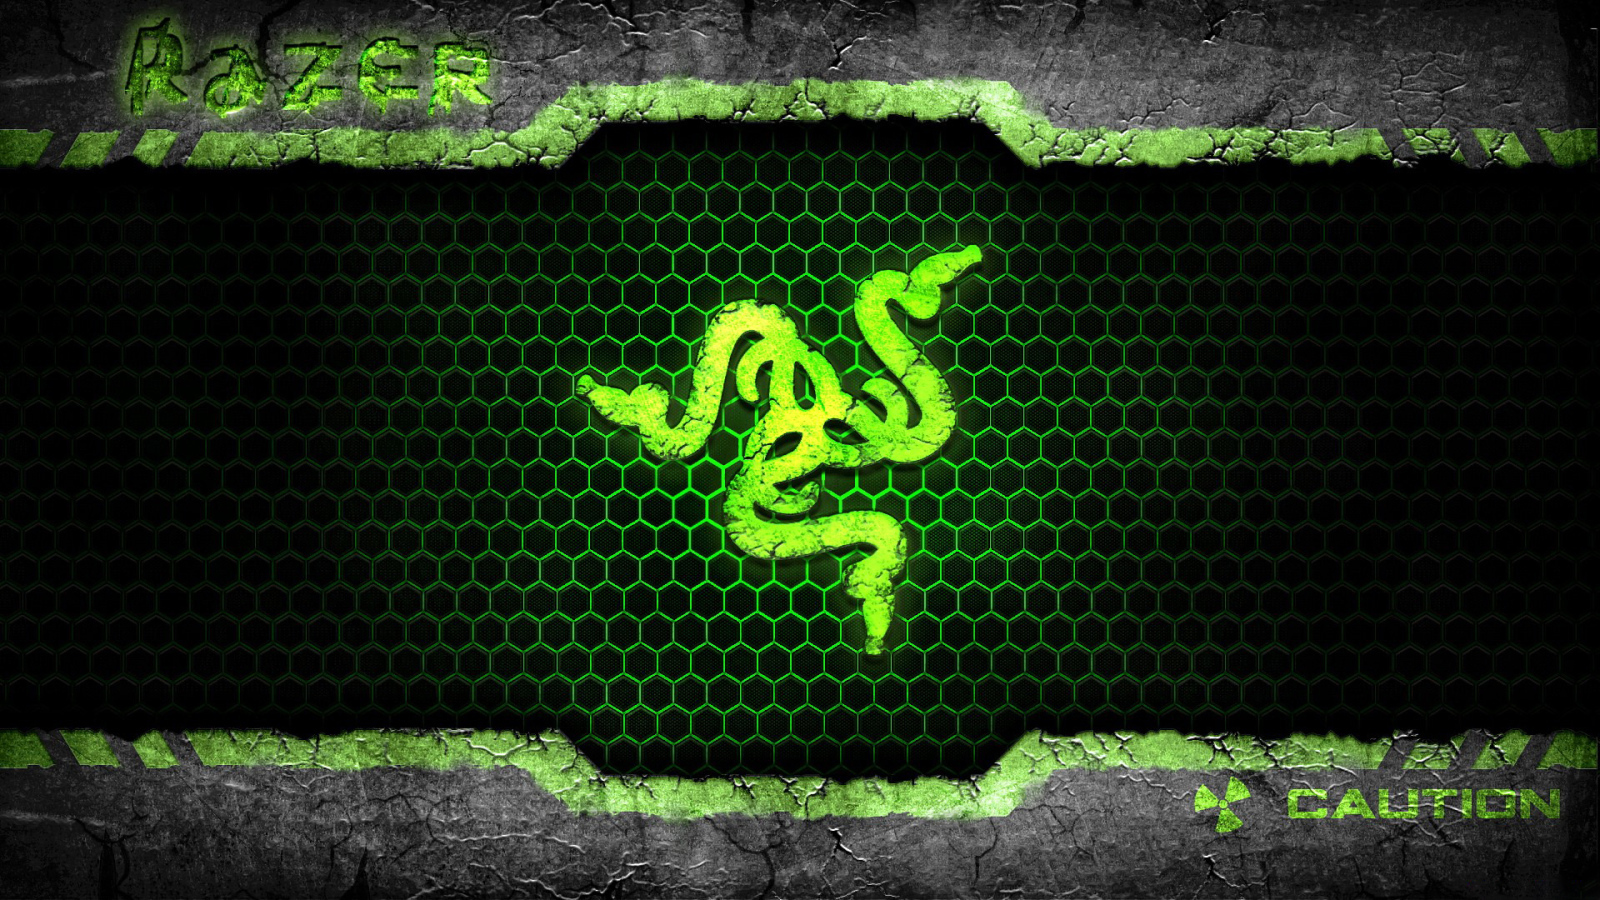 Значок из змей компании Razer